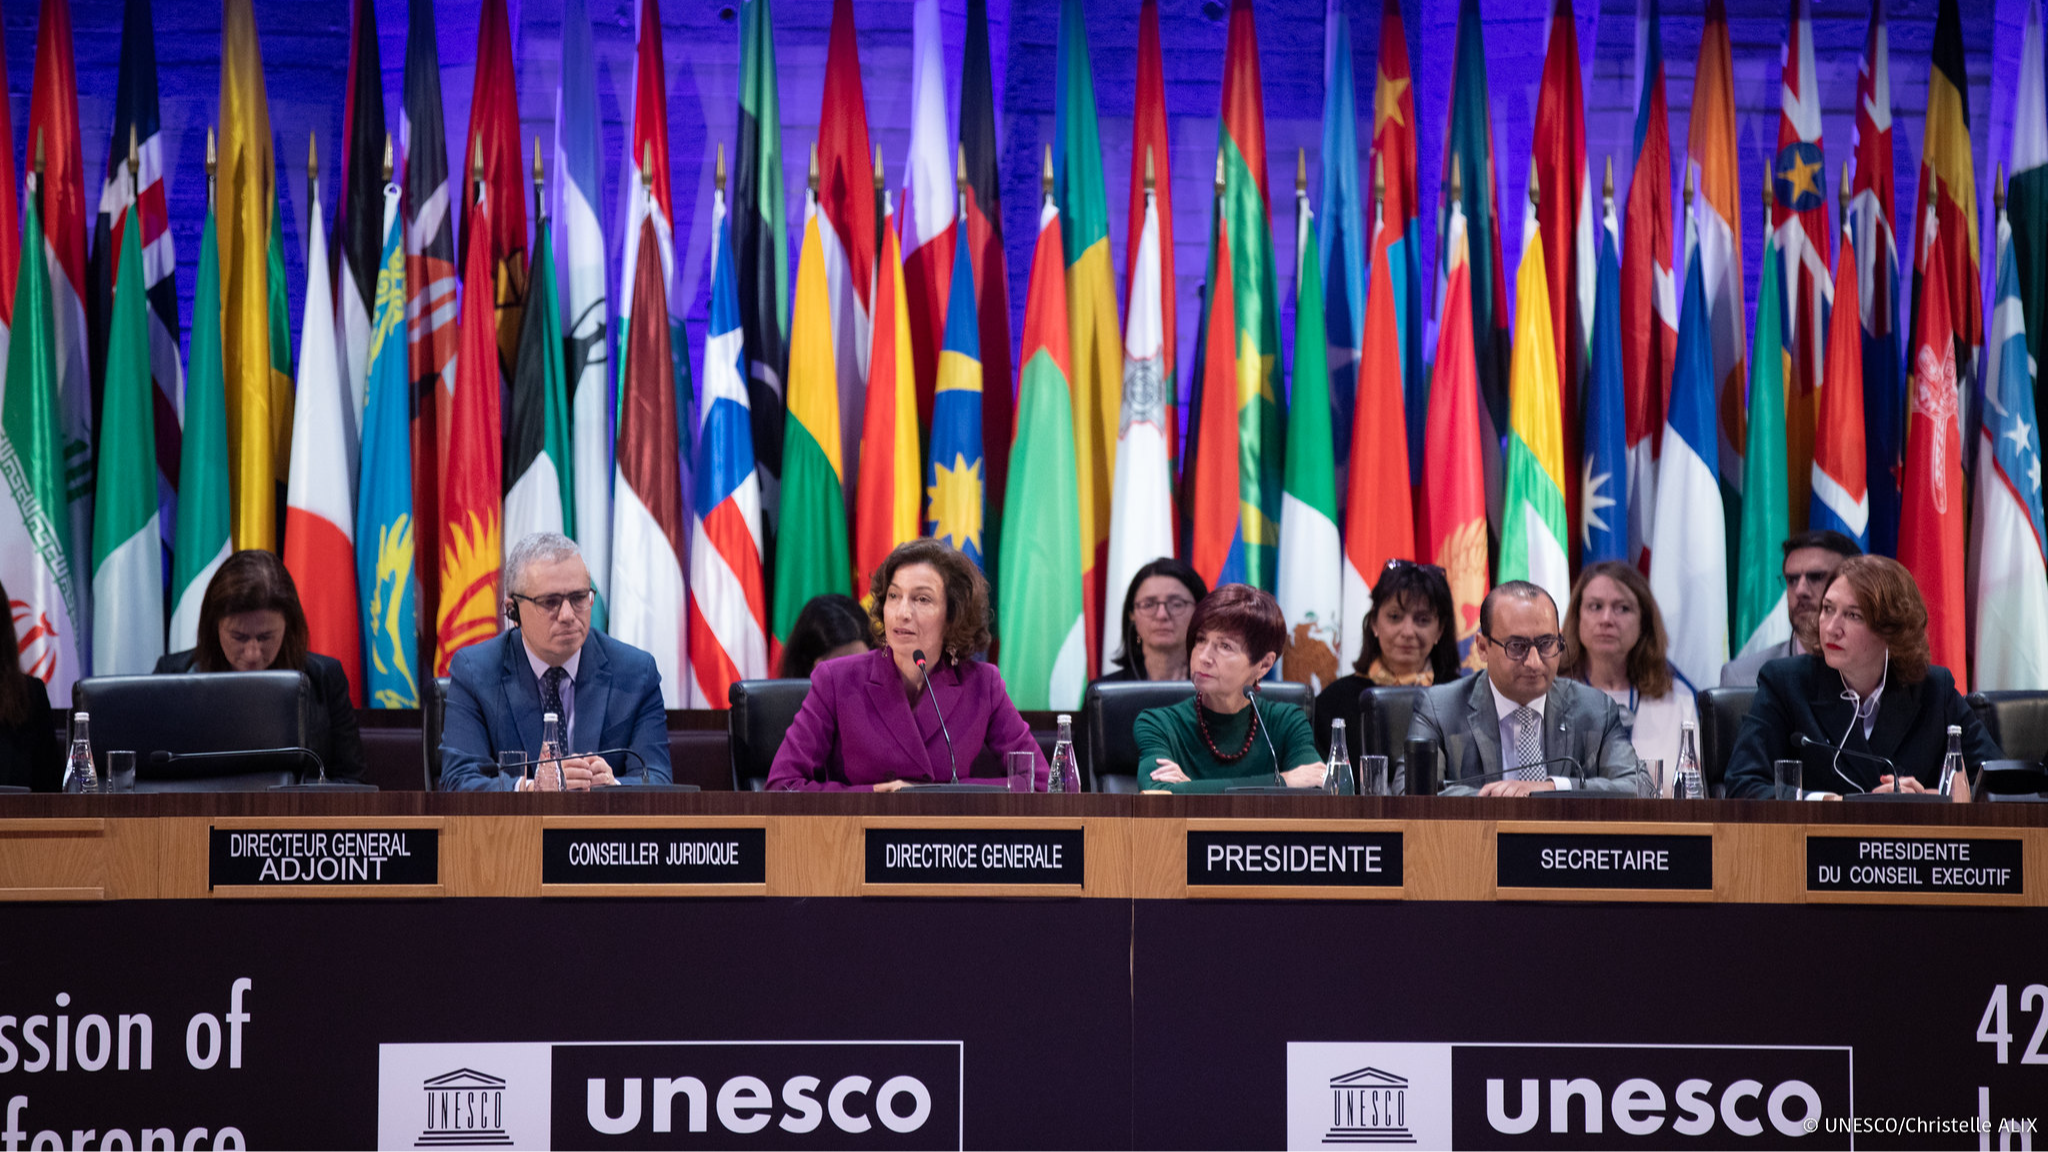 UNESCO General Conference © UNESCO/Christelle ALIX